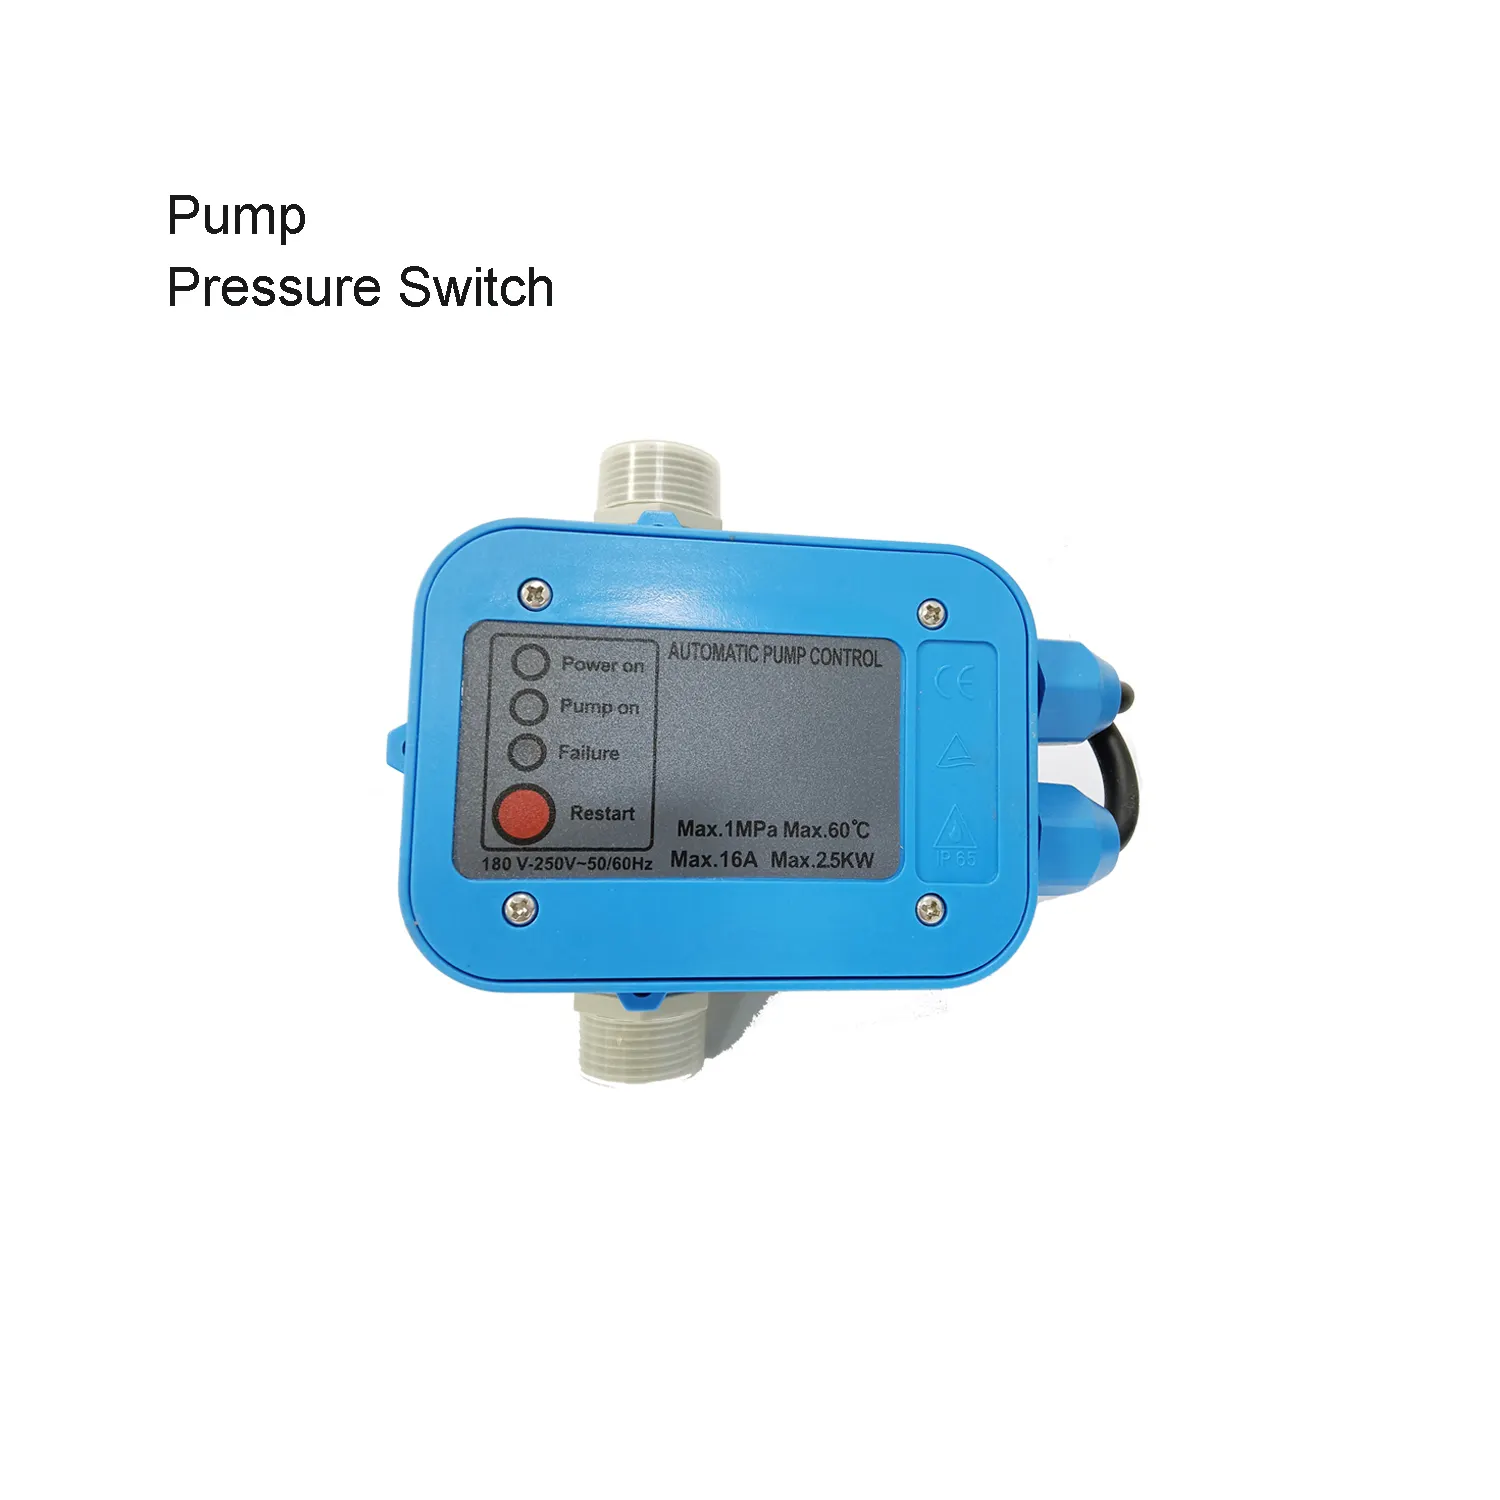 Control automático de presión de la bomba Interruptor de presión ajustable de fácil operación para control de presión de la bomba de agua